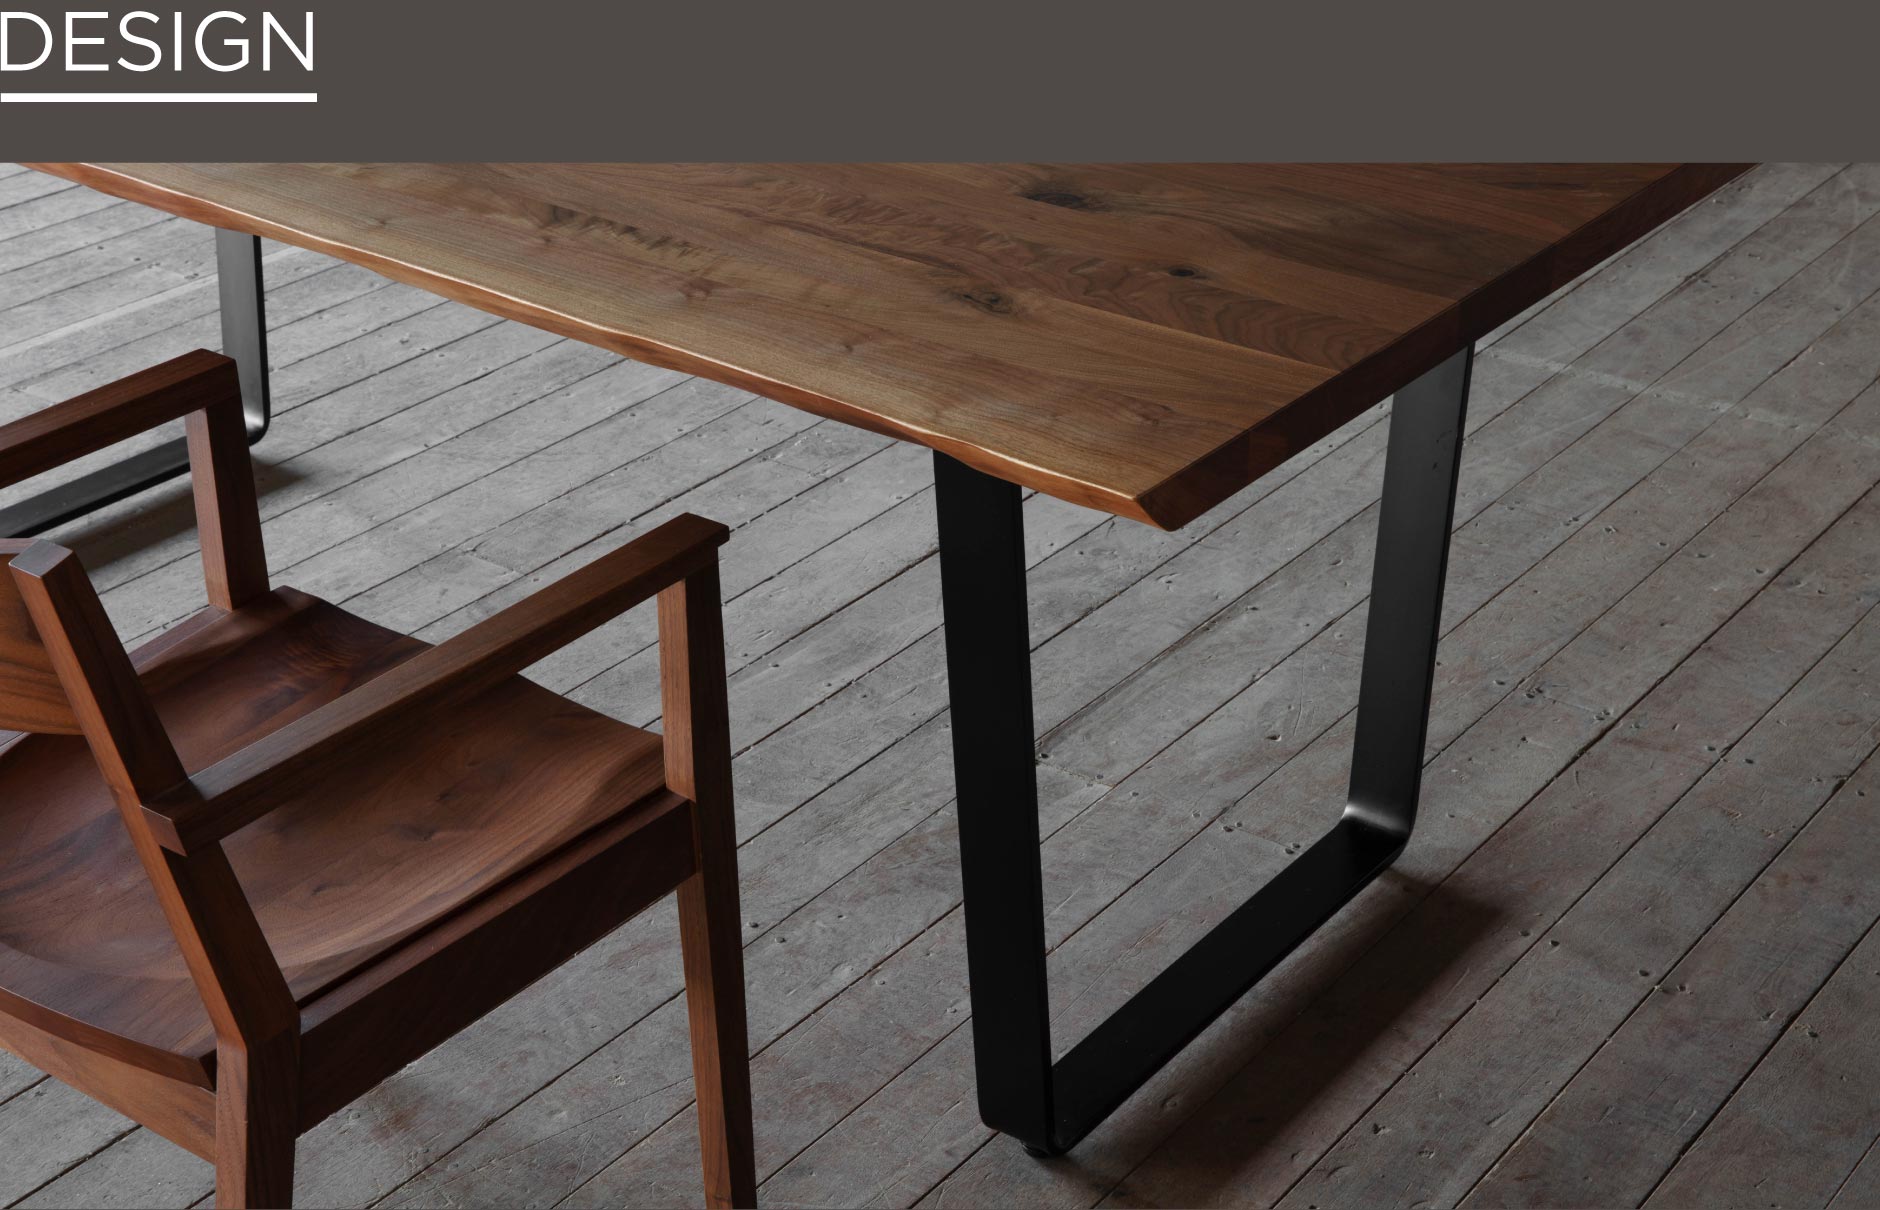 名古屋栄にあるSOLIDの家具の中でも人気の無垢鉄脚タイプのダイニングテーブルです。無垢材と異素材の組み合わせでインダストリアルな空間に。